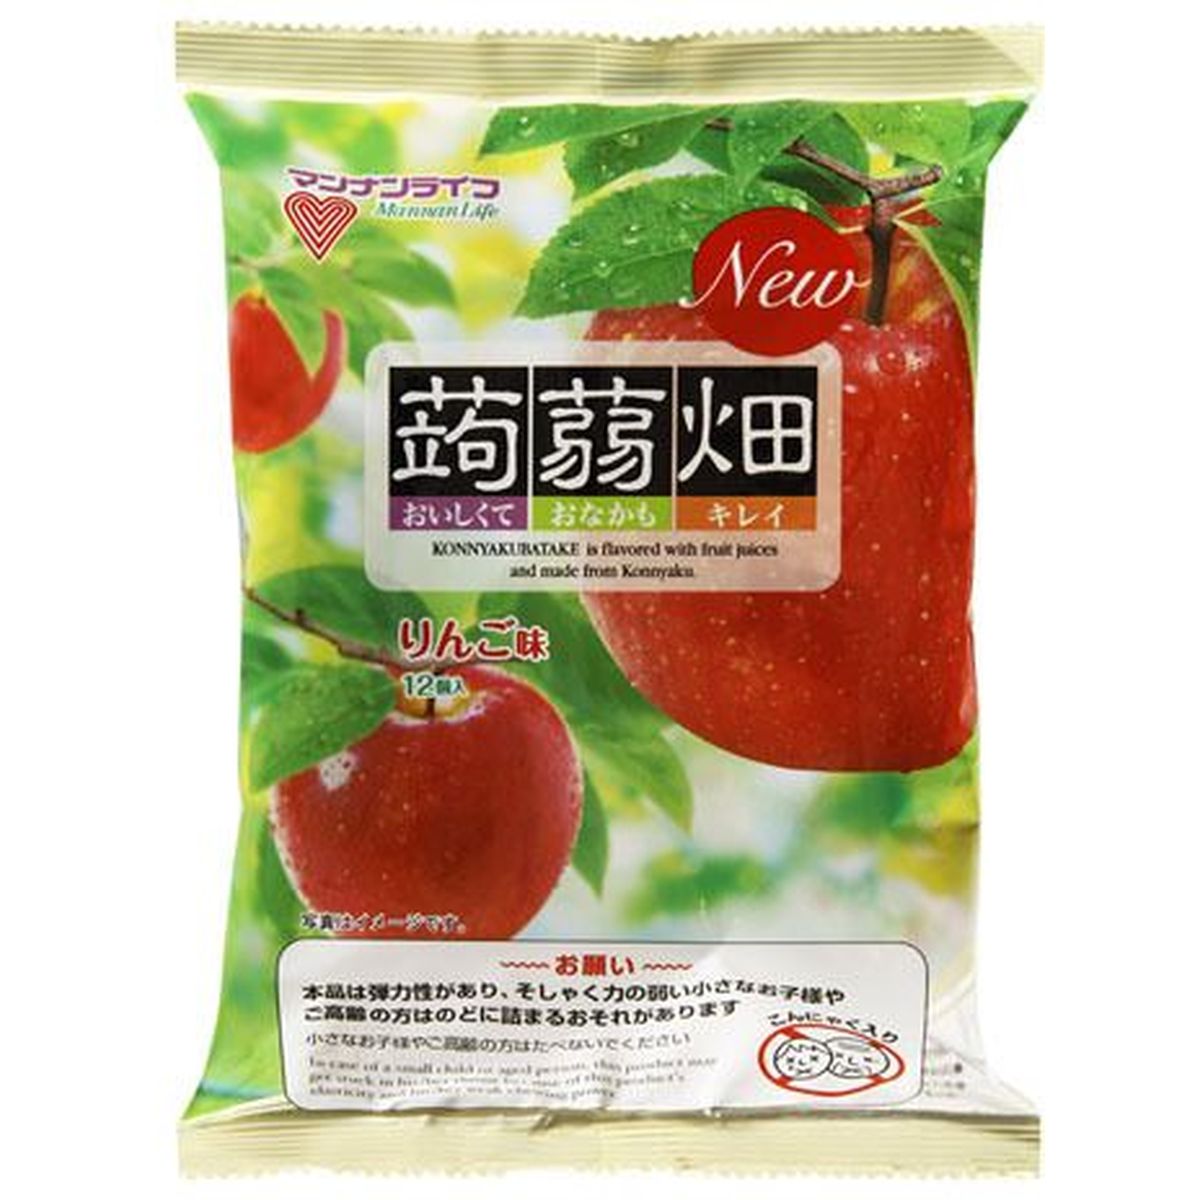 【12個入リ】マンナンライフ 蒟蒻畑 リンゴ味 25g